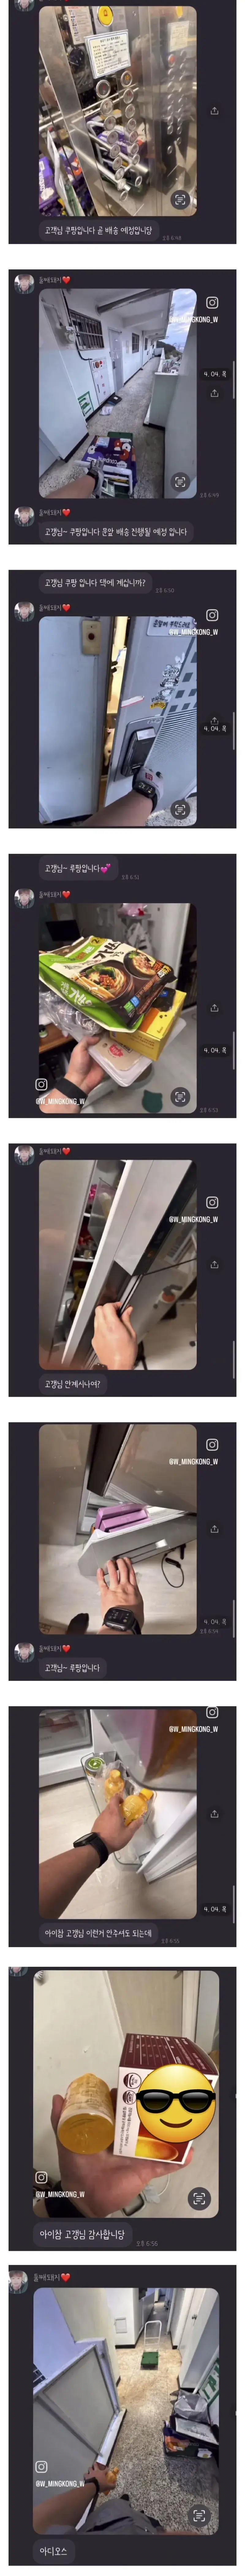 문열고 냉장고 털고간 쿠팡맨 | mbong.kr 엠봉